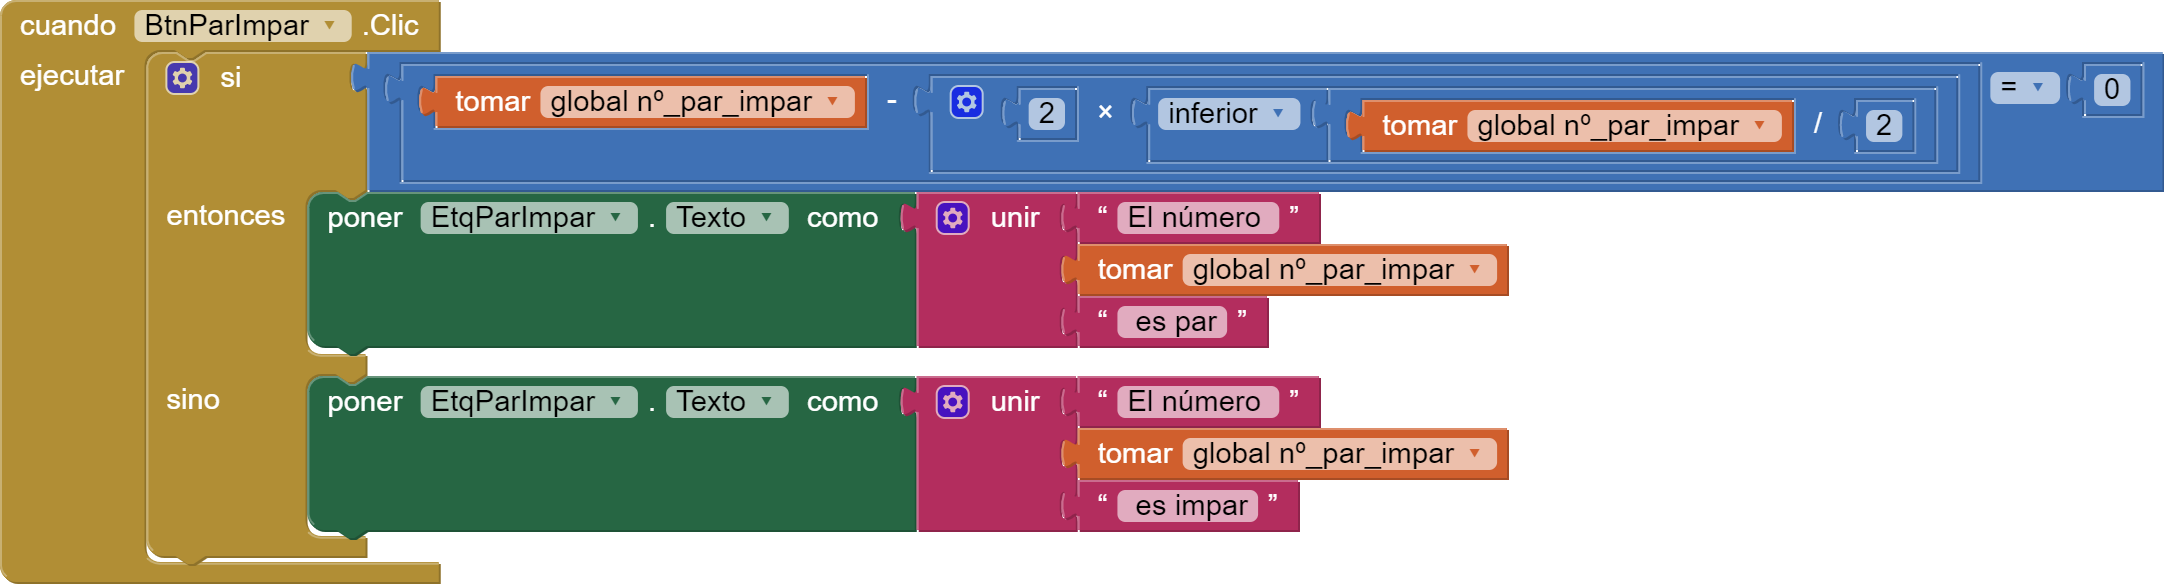 La imagen muestra una serie de bloques de App Inventor conectados formando un condicional si, entonces, si no que hay que interpretar